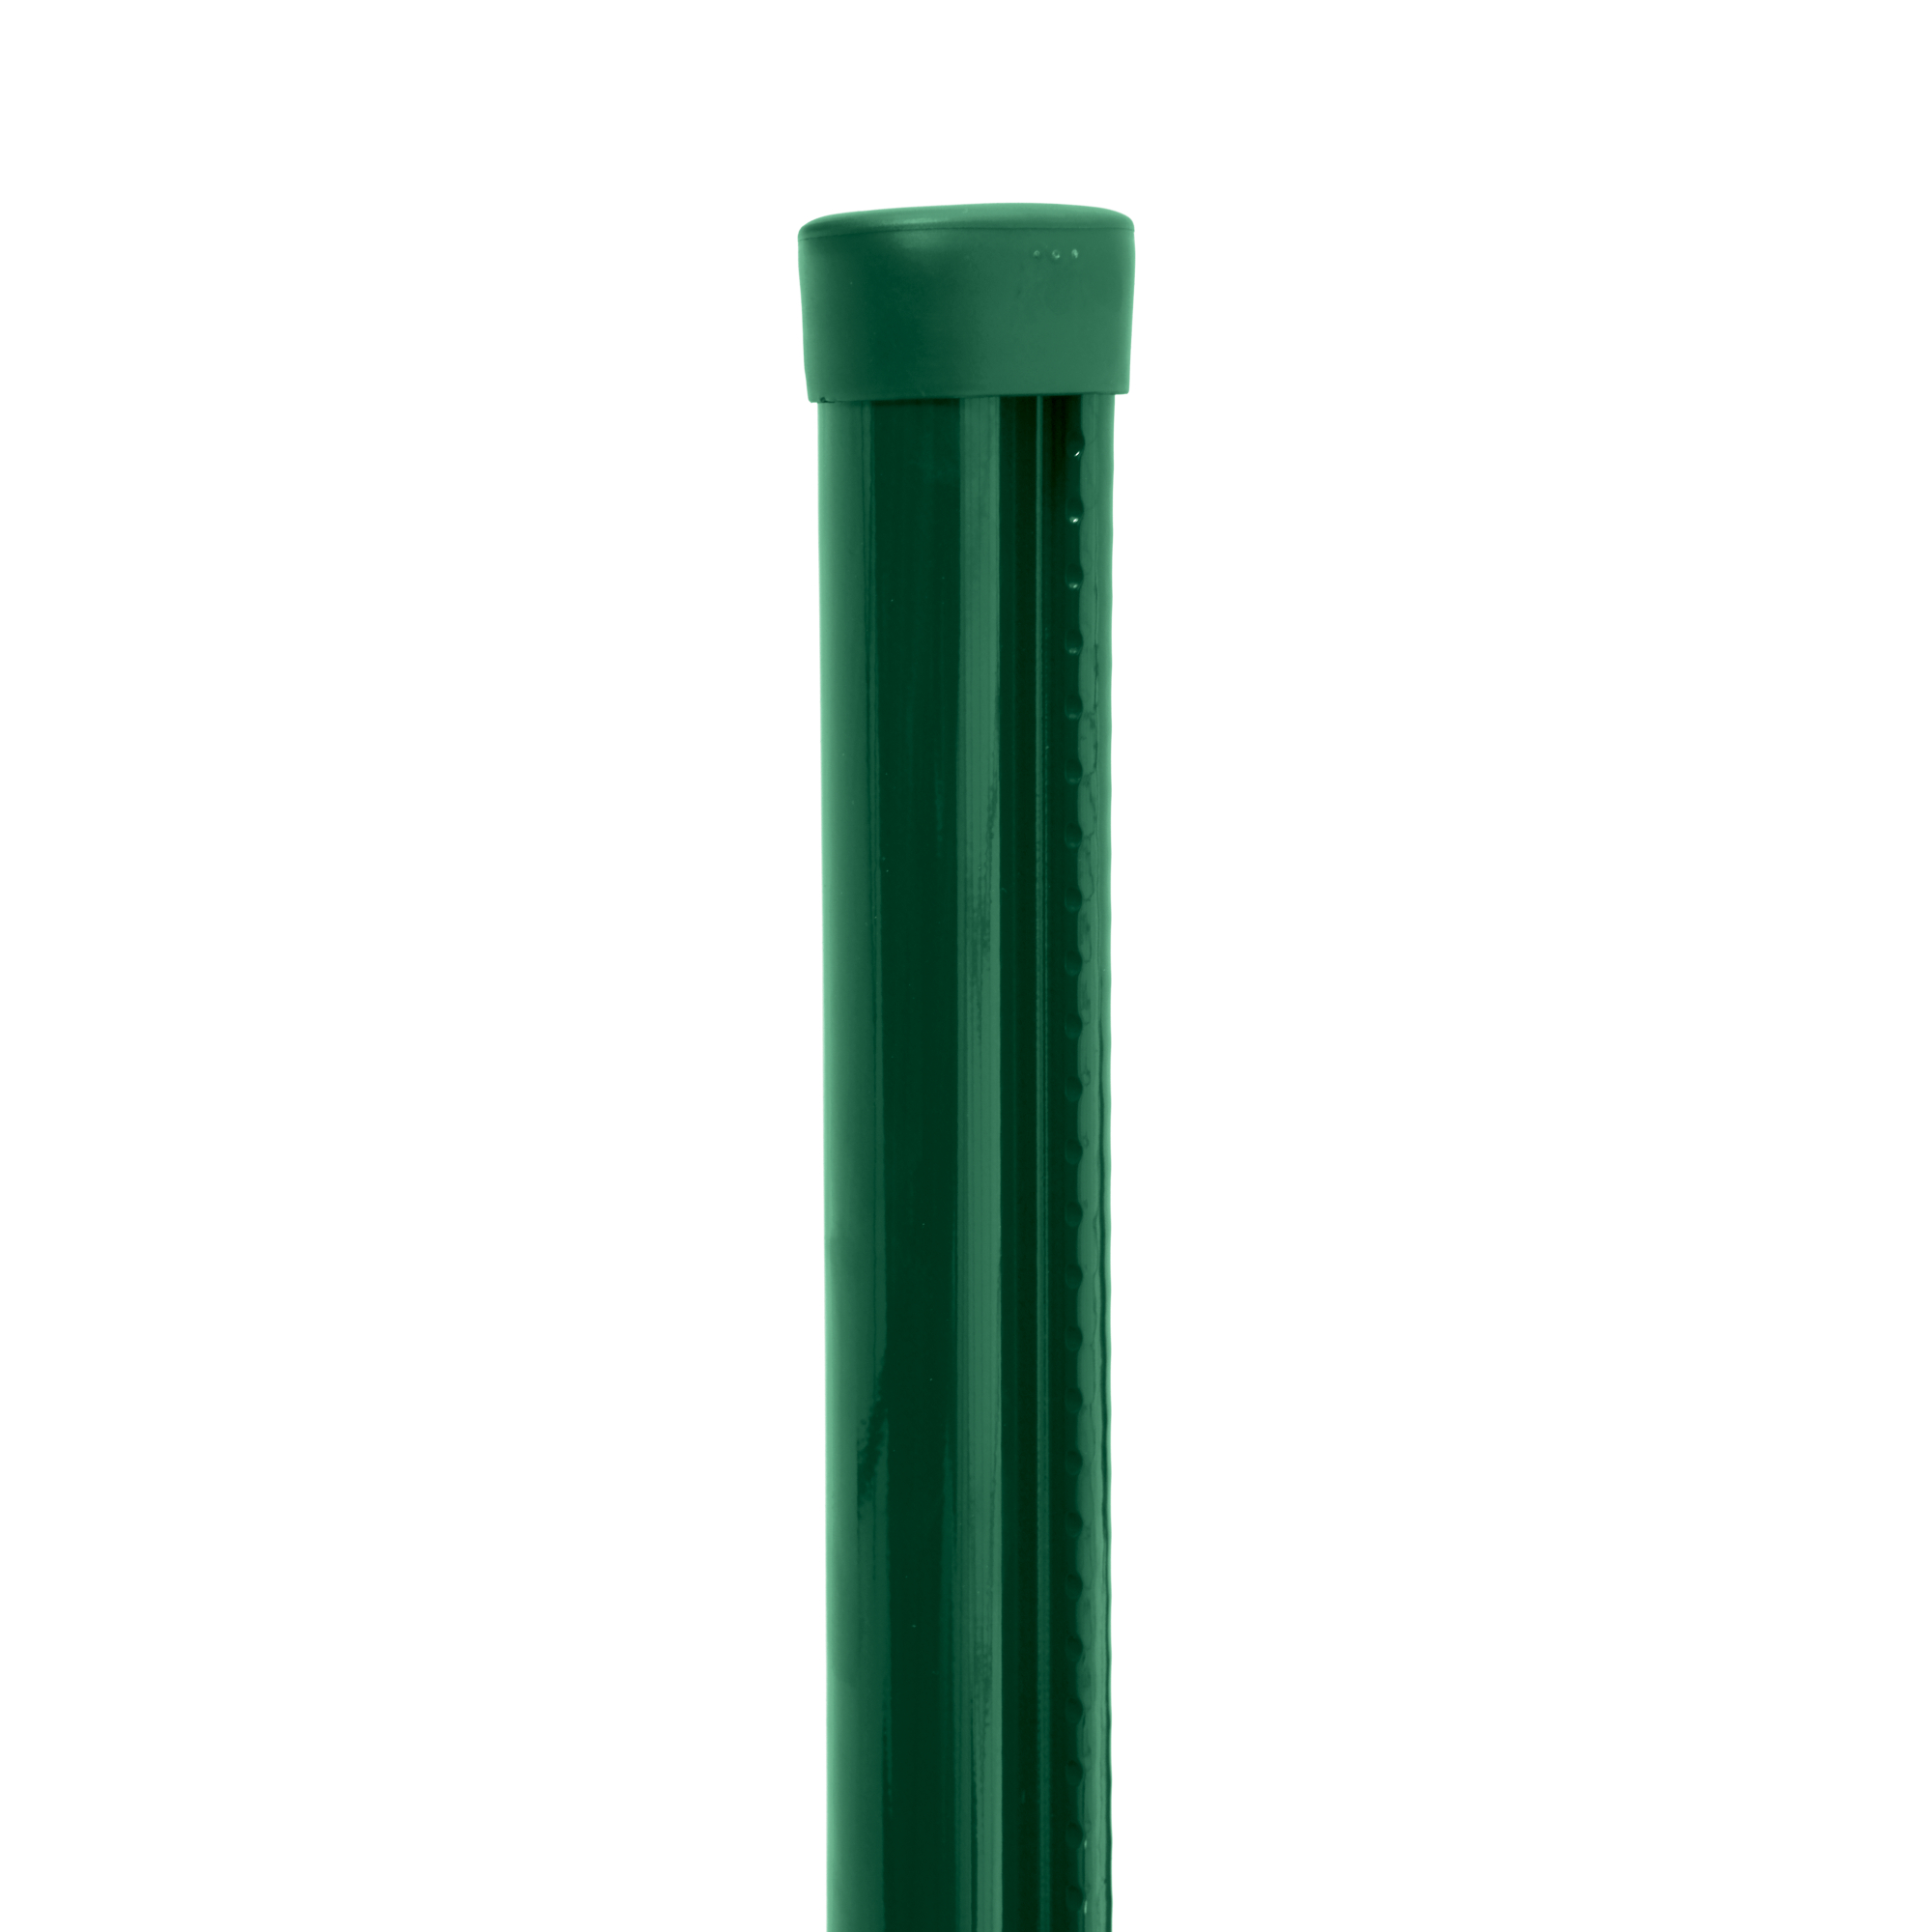 Sloupek kulatý s montážní lištou Pilclip Zn + PVC zelený průměr 48 mm výška 2